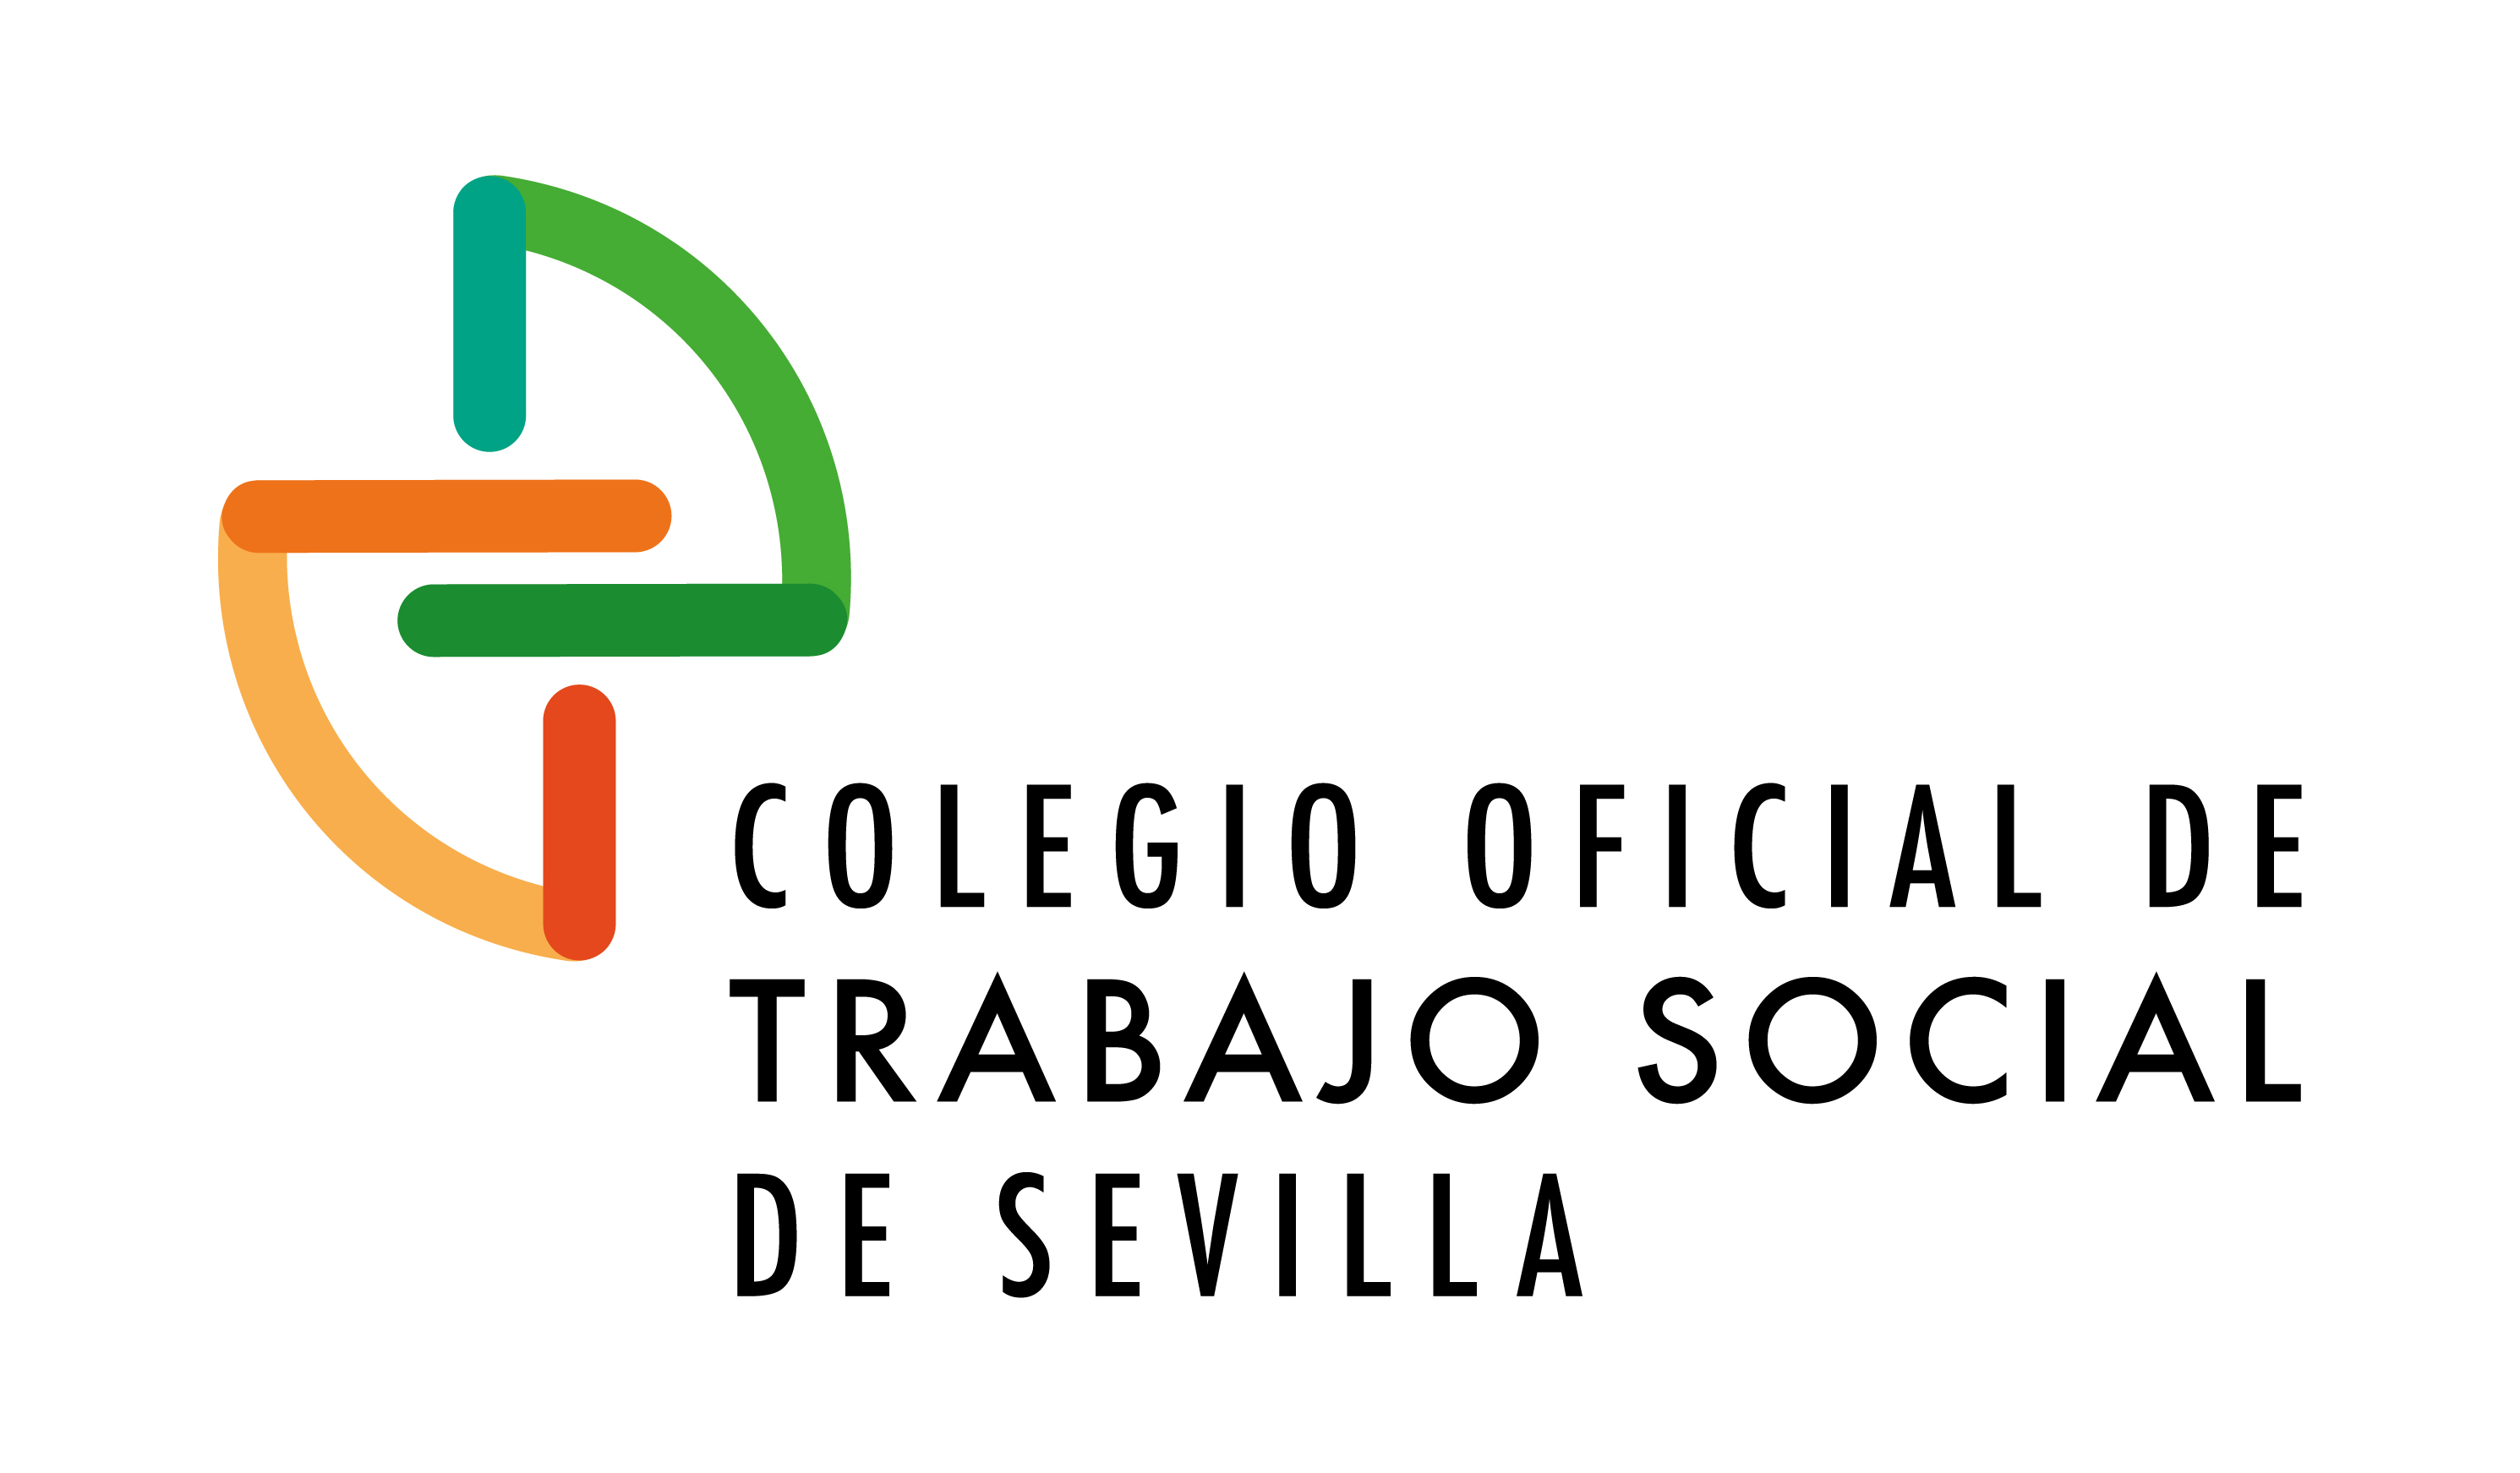 COLEGIO OFICIAL TRABAJO SOCIAL DE SEVILLA